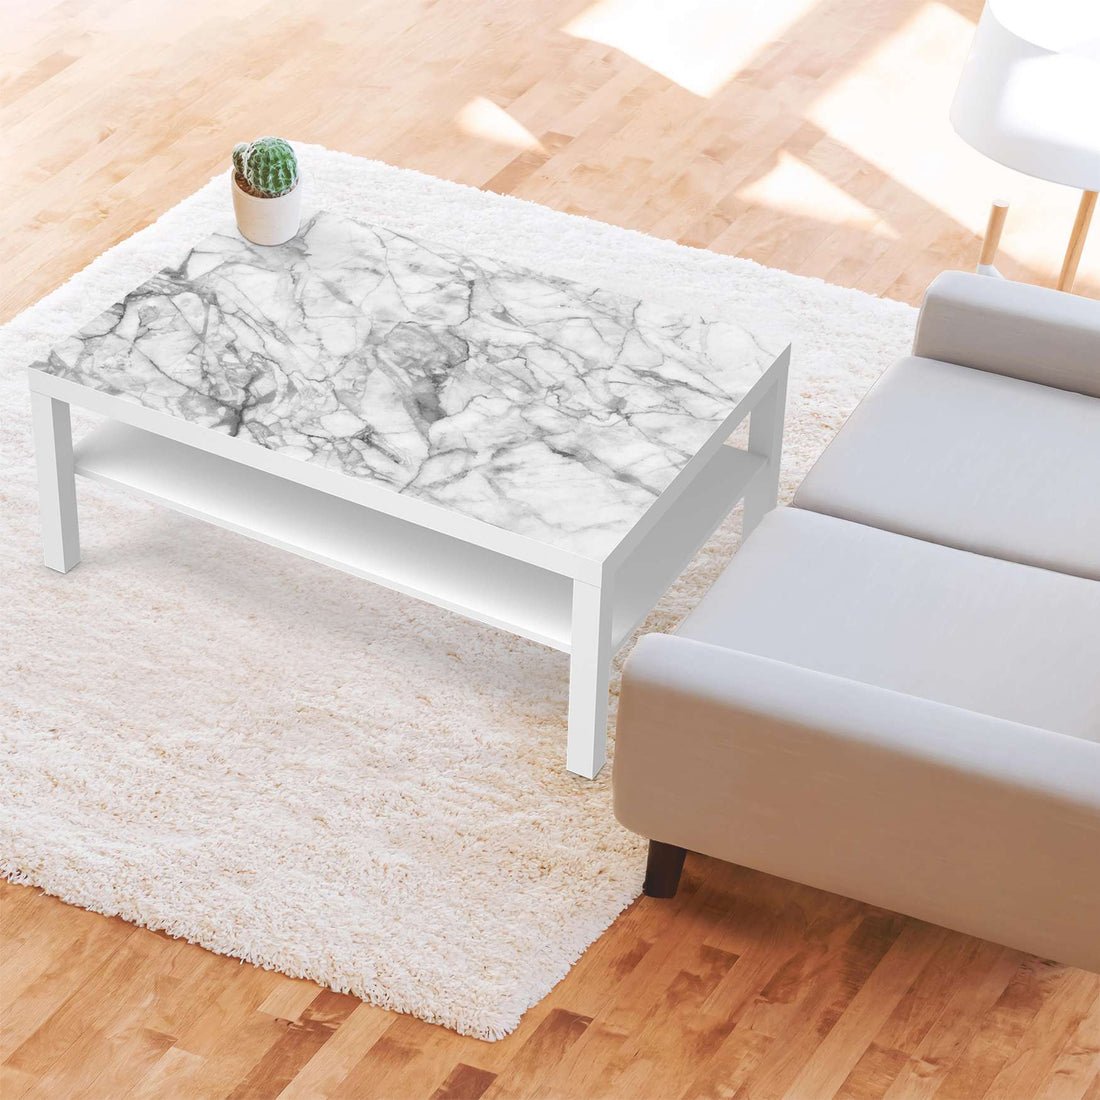 Klebefolie Marmor weiß - IKEA Lack Tisch 118x78 cm - Wohnzimmer